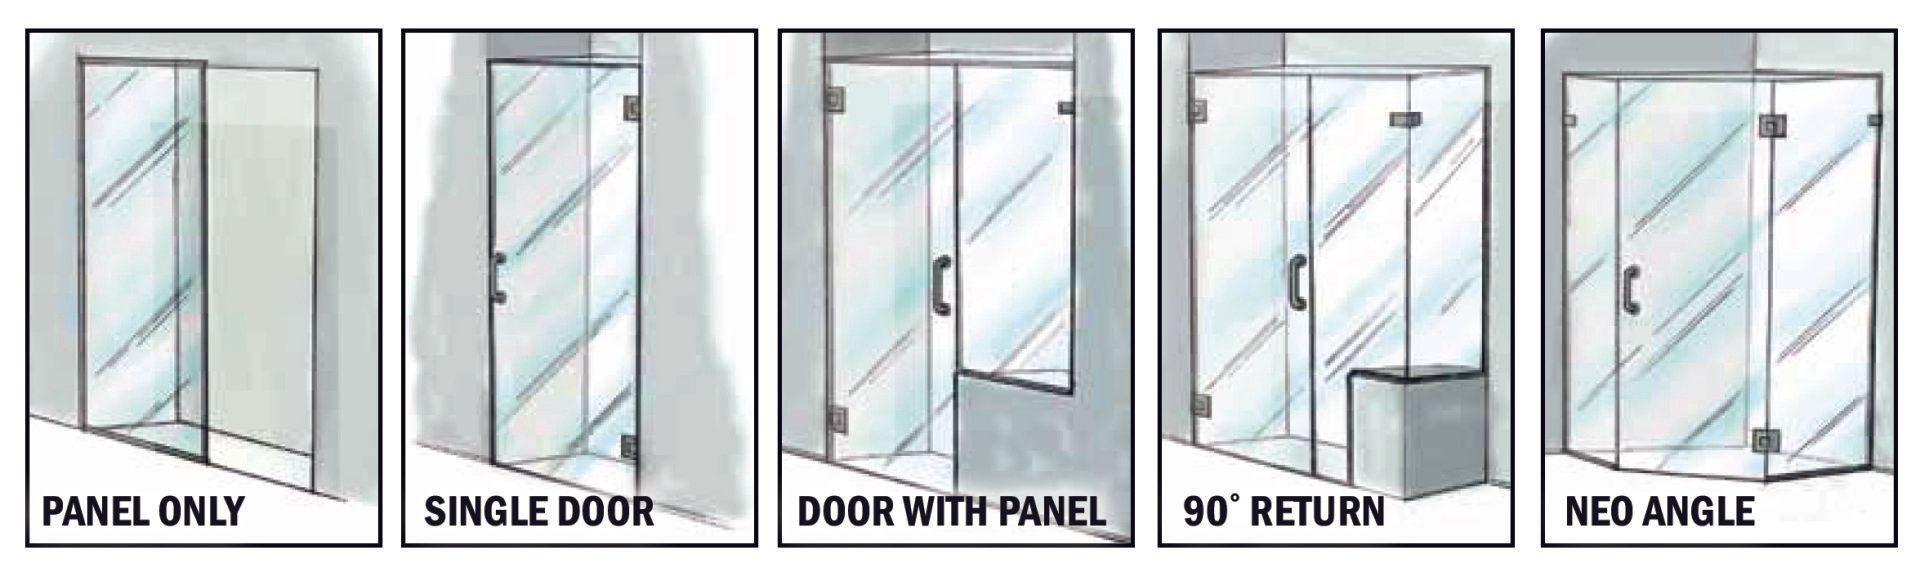 Glass shower door configurations